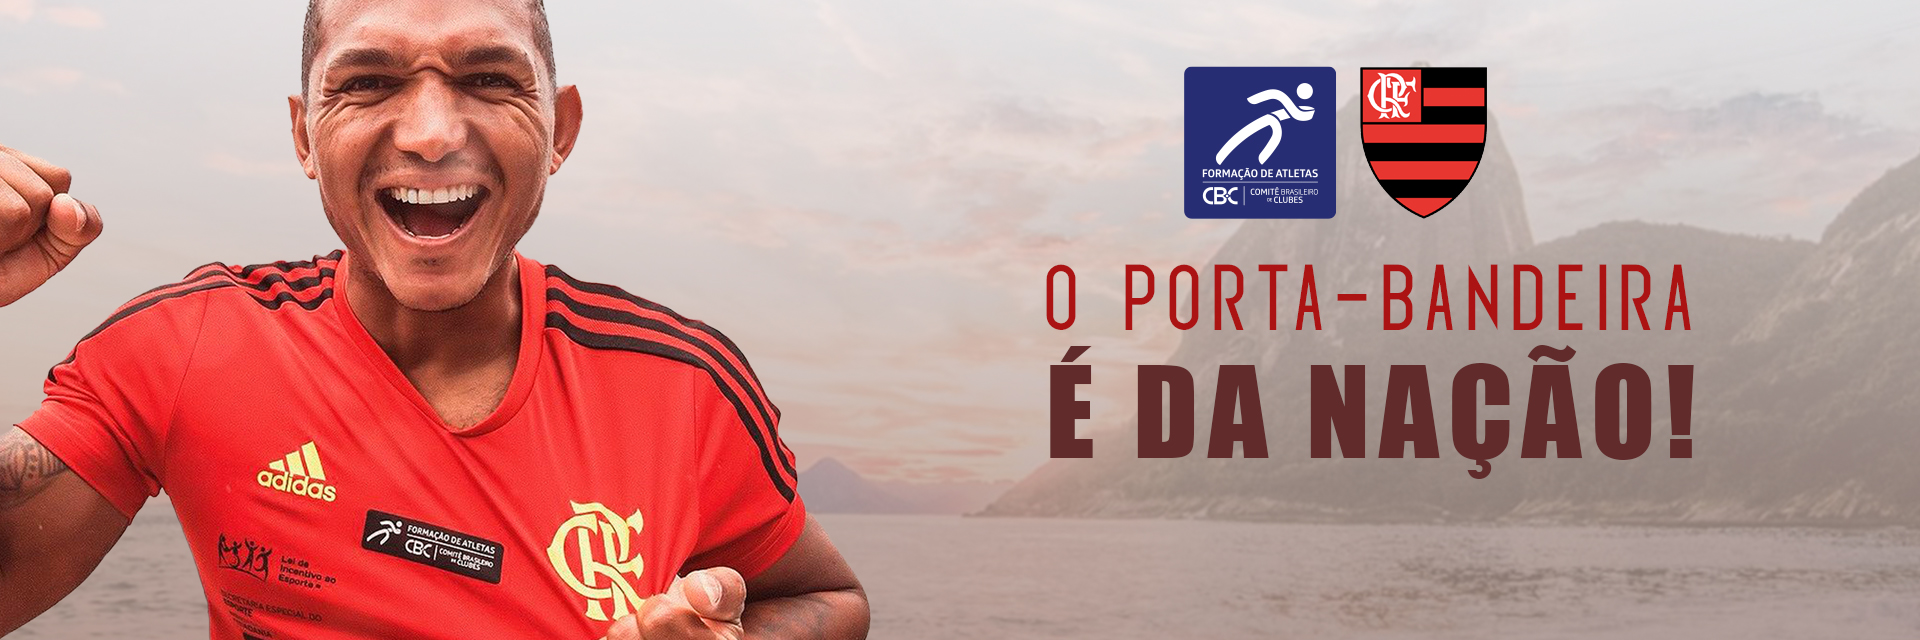  Isaquias Queiroz, atleta do Flamengo, será um dos Porta-Bandeiras do Brasil na abertura dos Jogos Olímpicos de Paris 2024